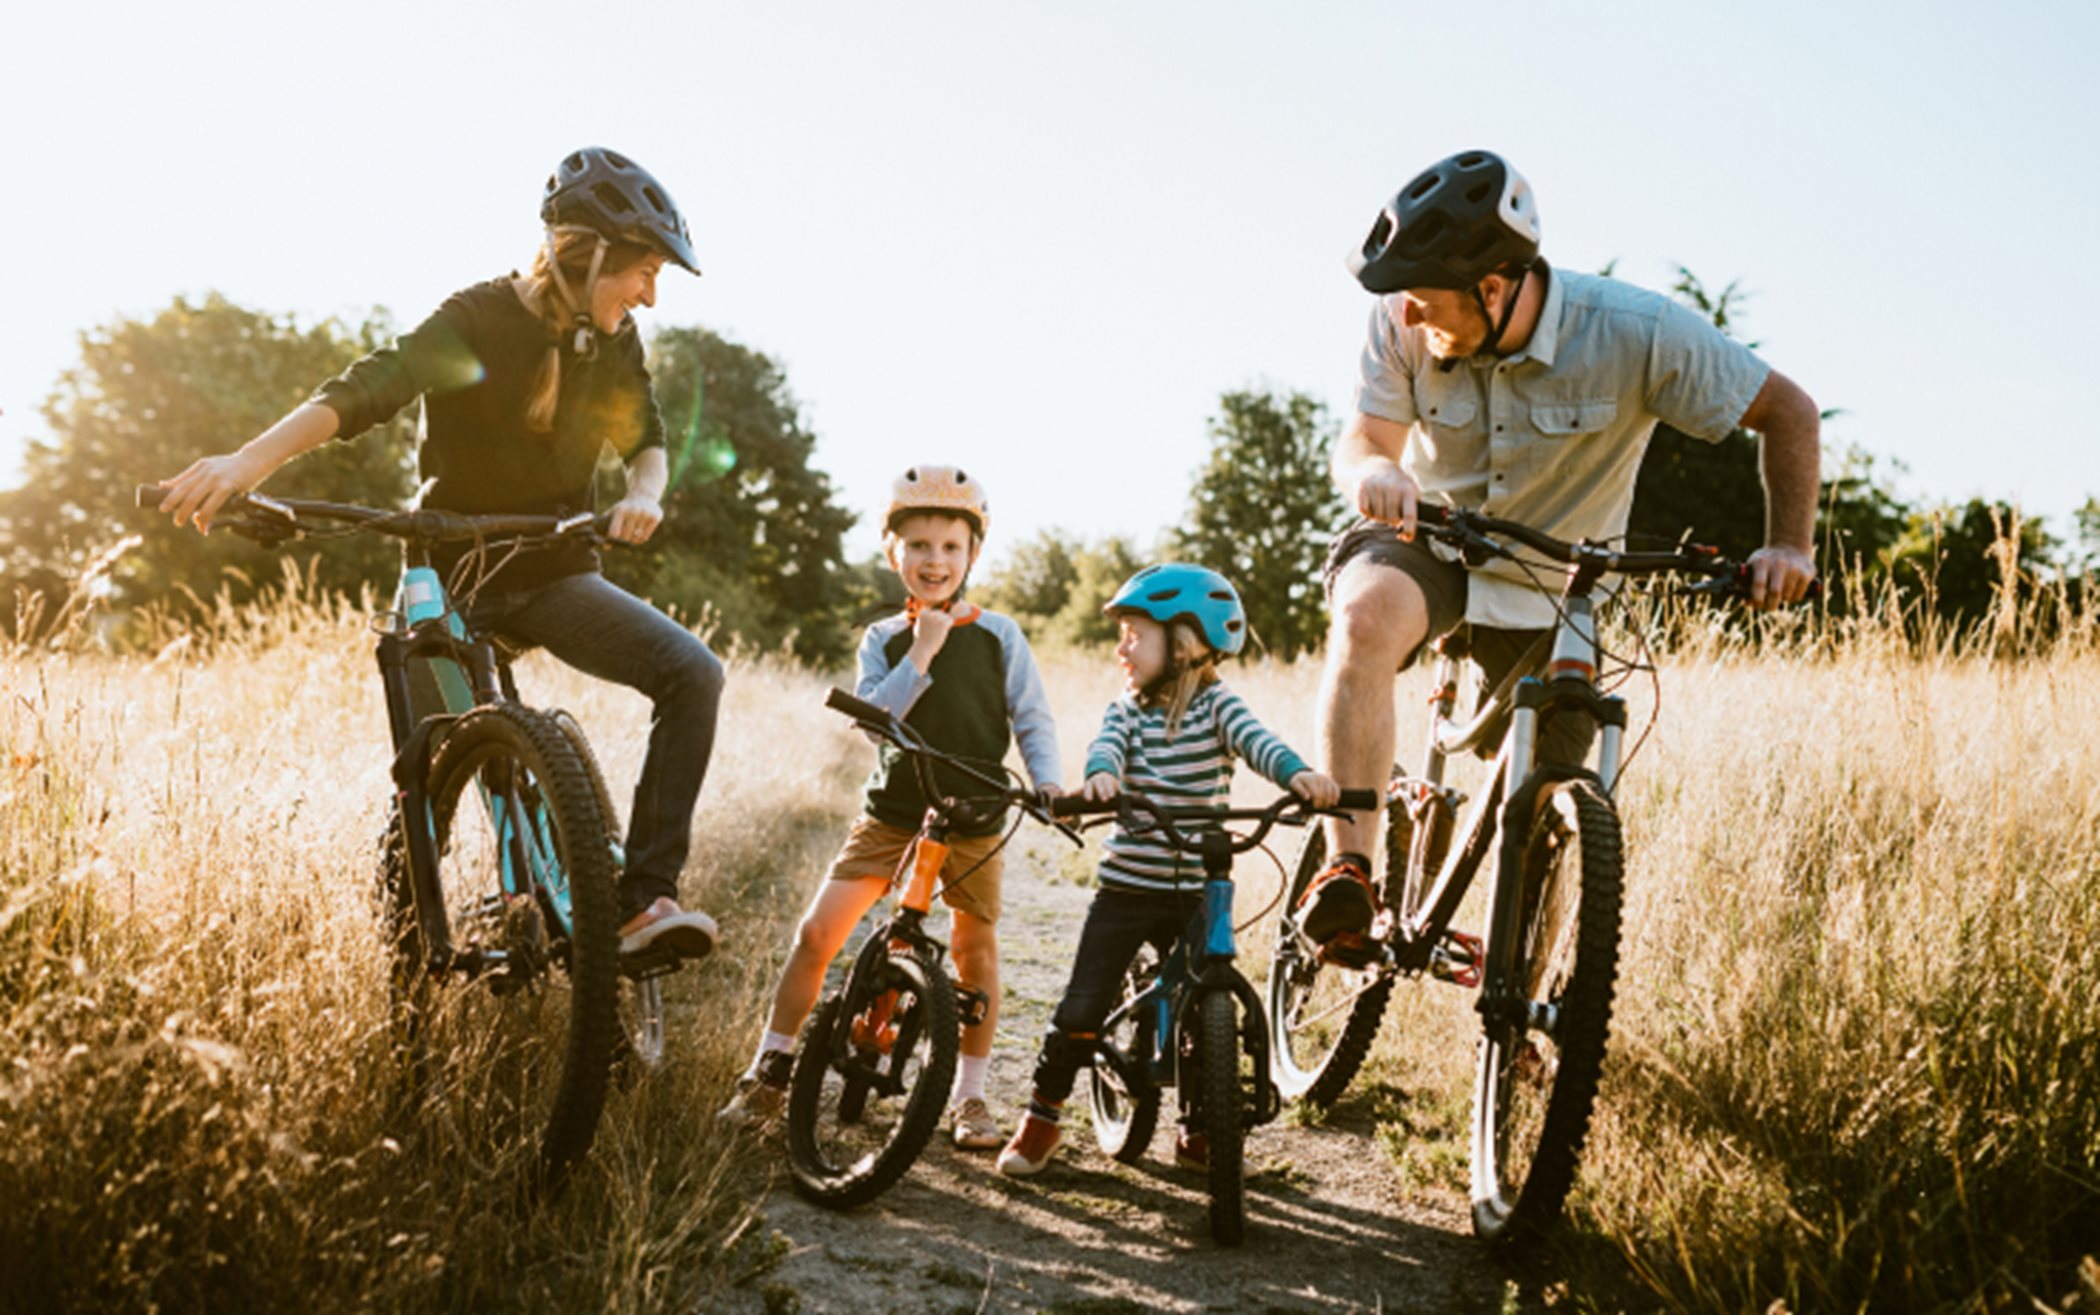 Family biking together on bike trail